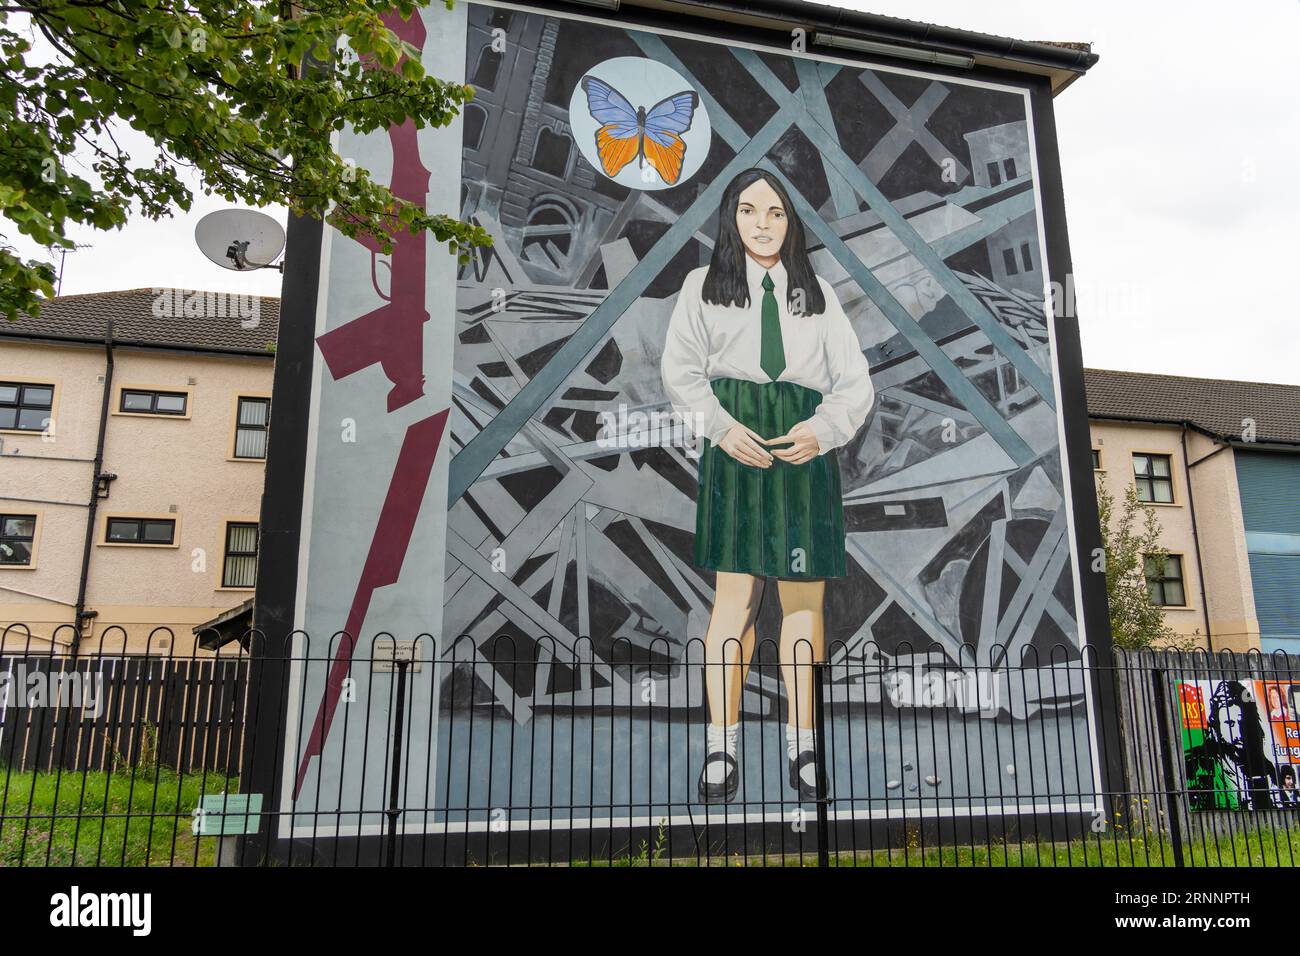 People's Gallery - The Death of Innocence Wandgemälde in der Nähe von Free Derry Corner in der irischen Republikanischen Gegend von Bogside, Derry - Londonderry, Nordirland Stockfoto